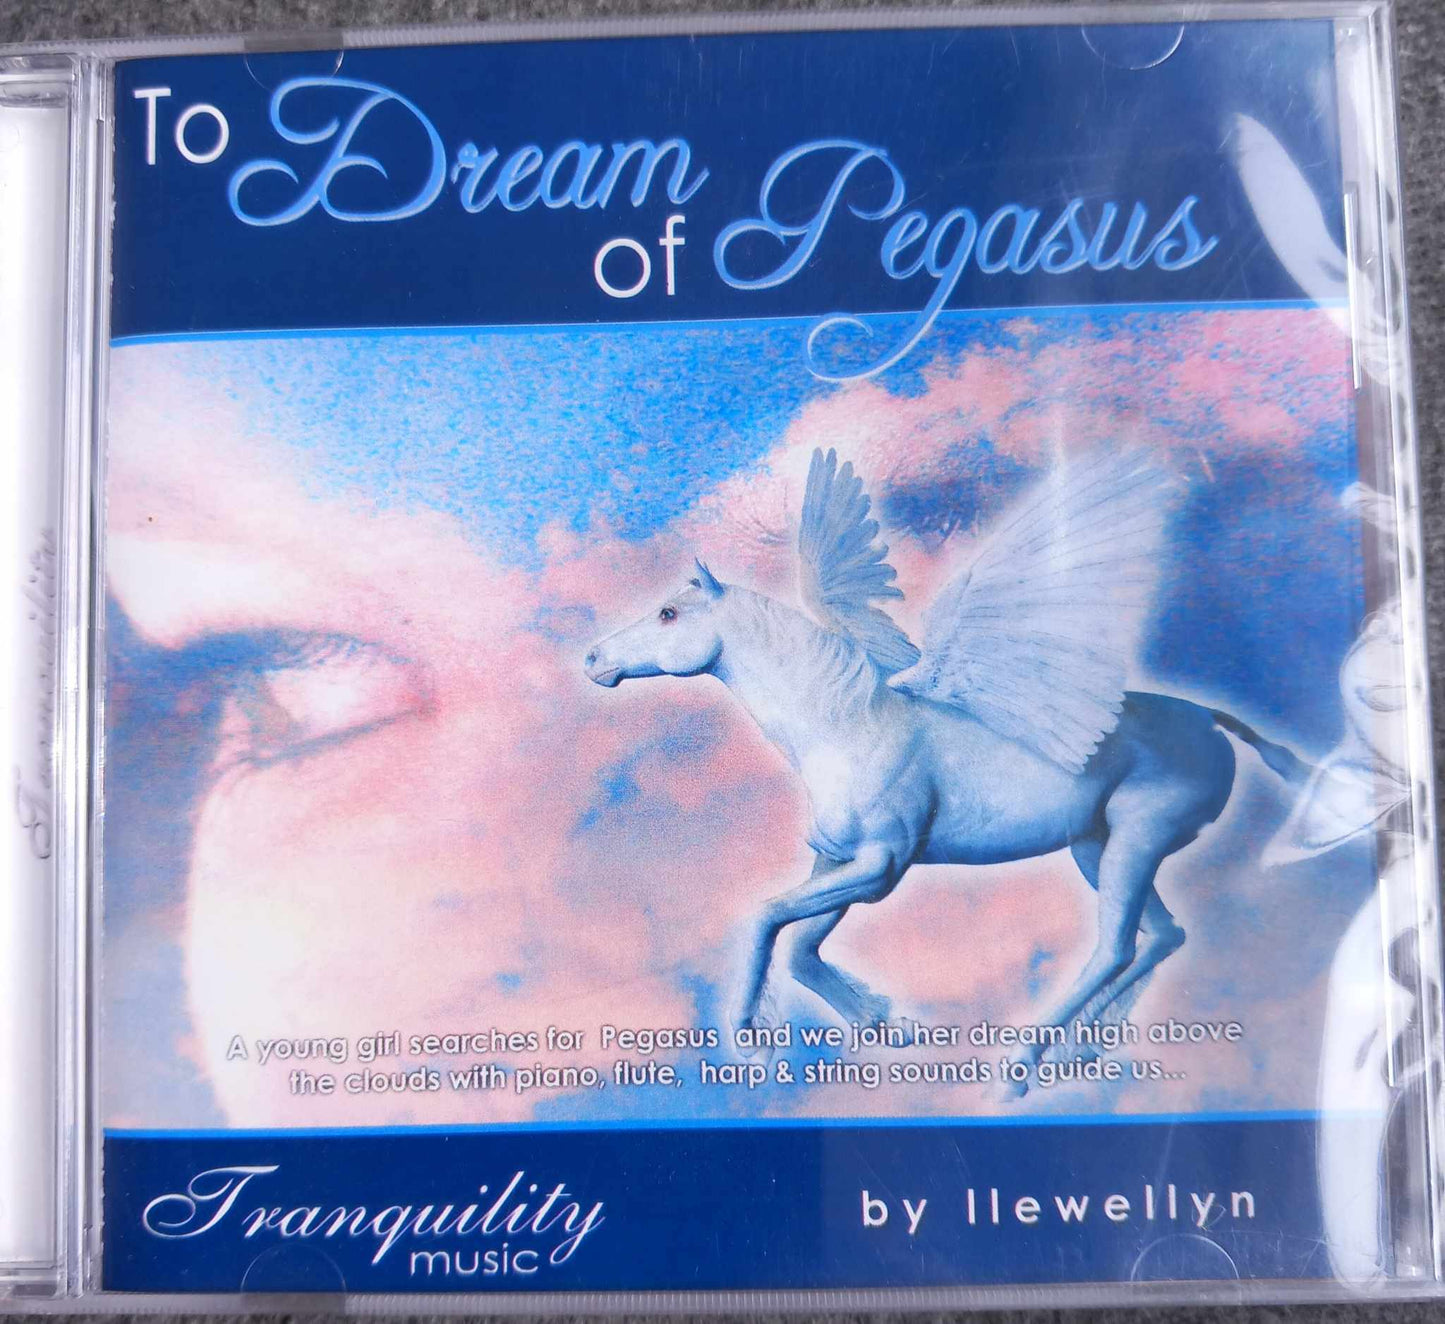 To dream of Pegasus. Cd by Llewellyn